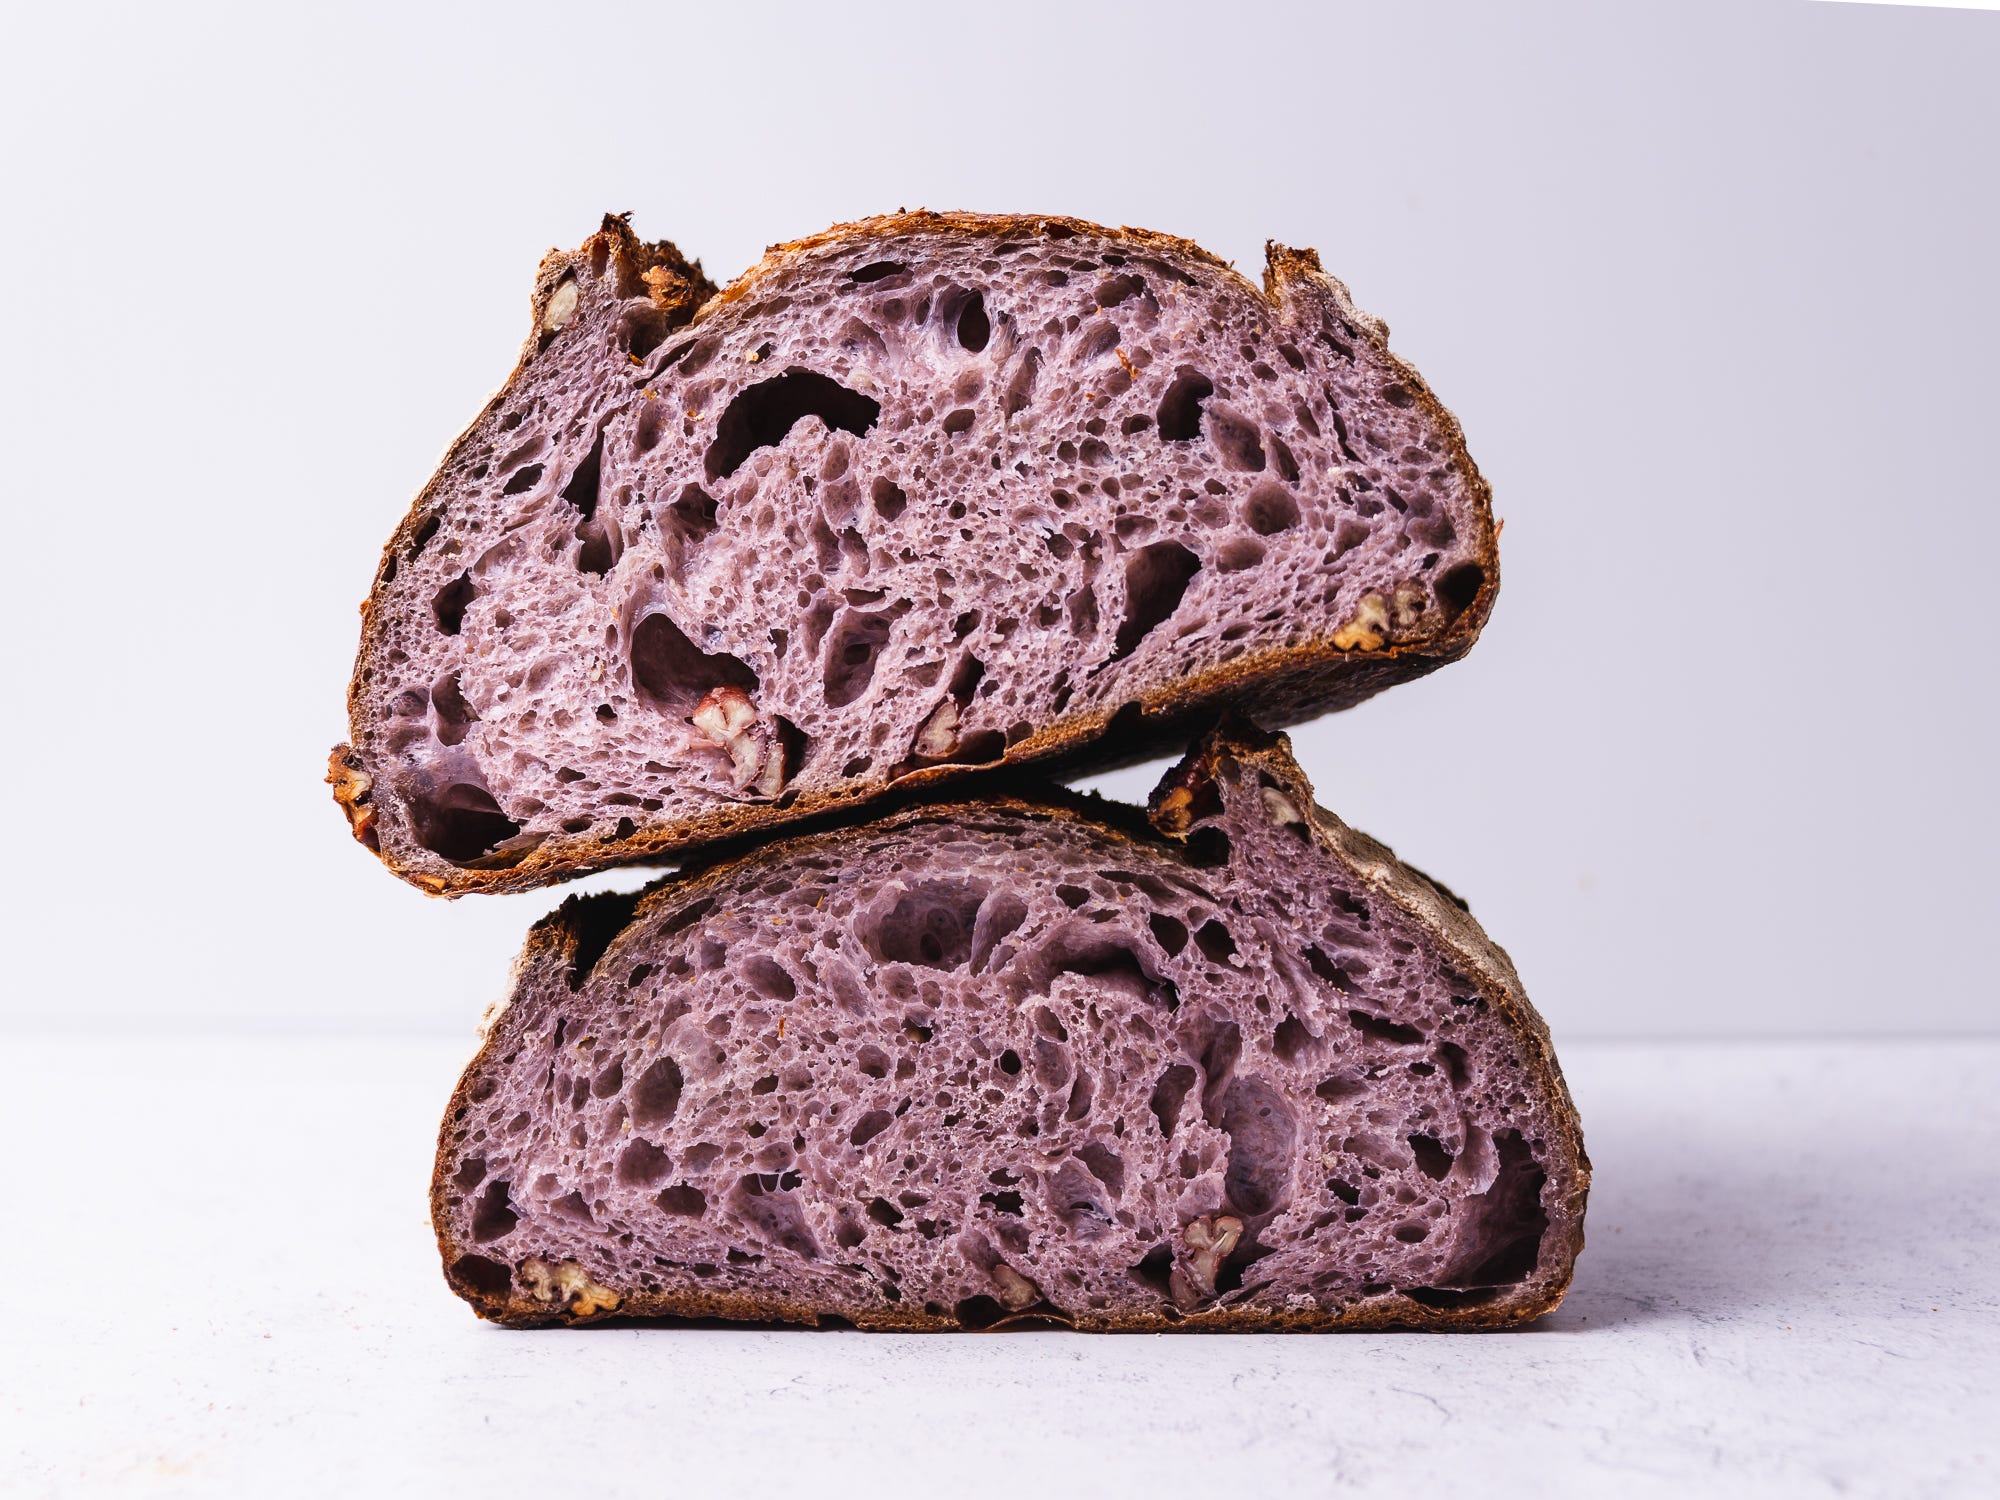 Pain au Levain (Sourdough Bread) Recipe